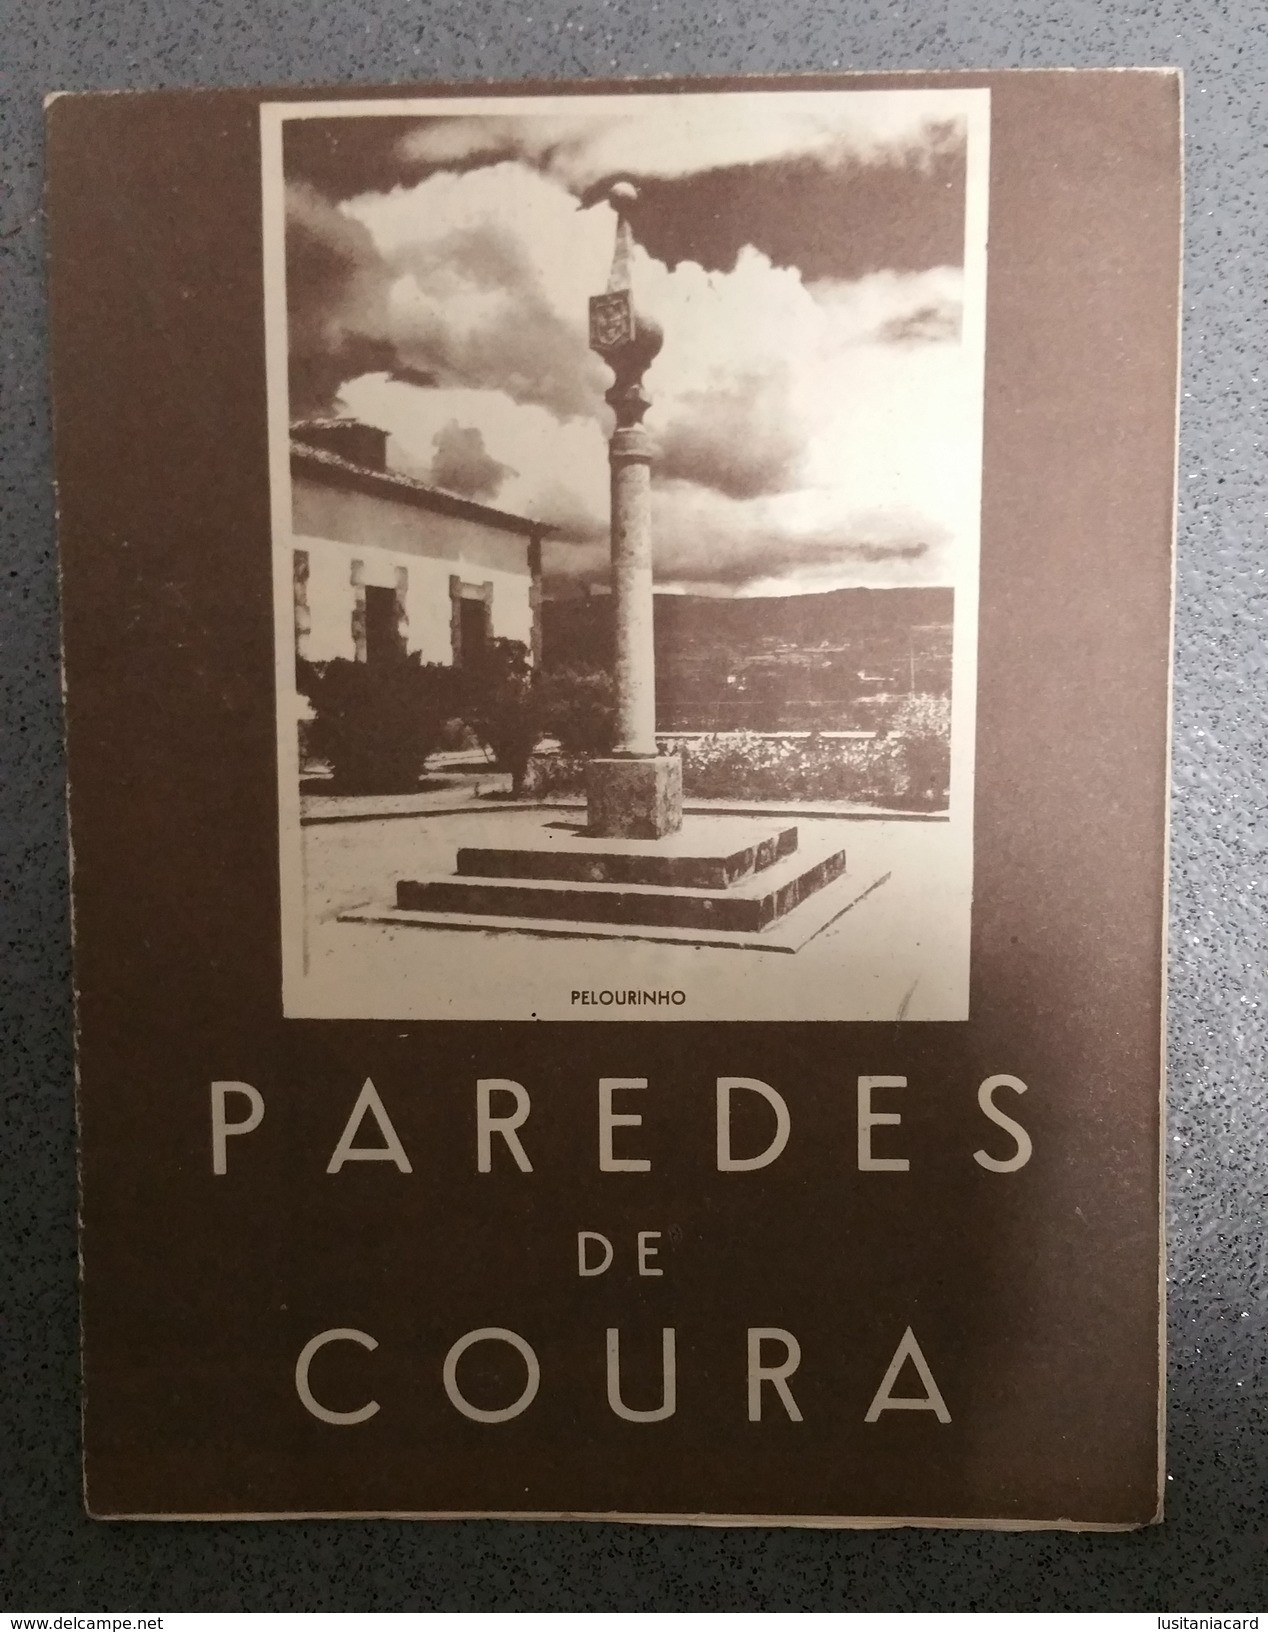 PAREDES DE COURA - ROTEIRO TURISTICO - « Pelourinho» (Ed. ROTEP Nº 226  - 1960 ) - Livres Anciens